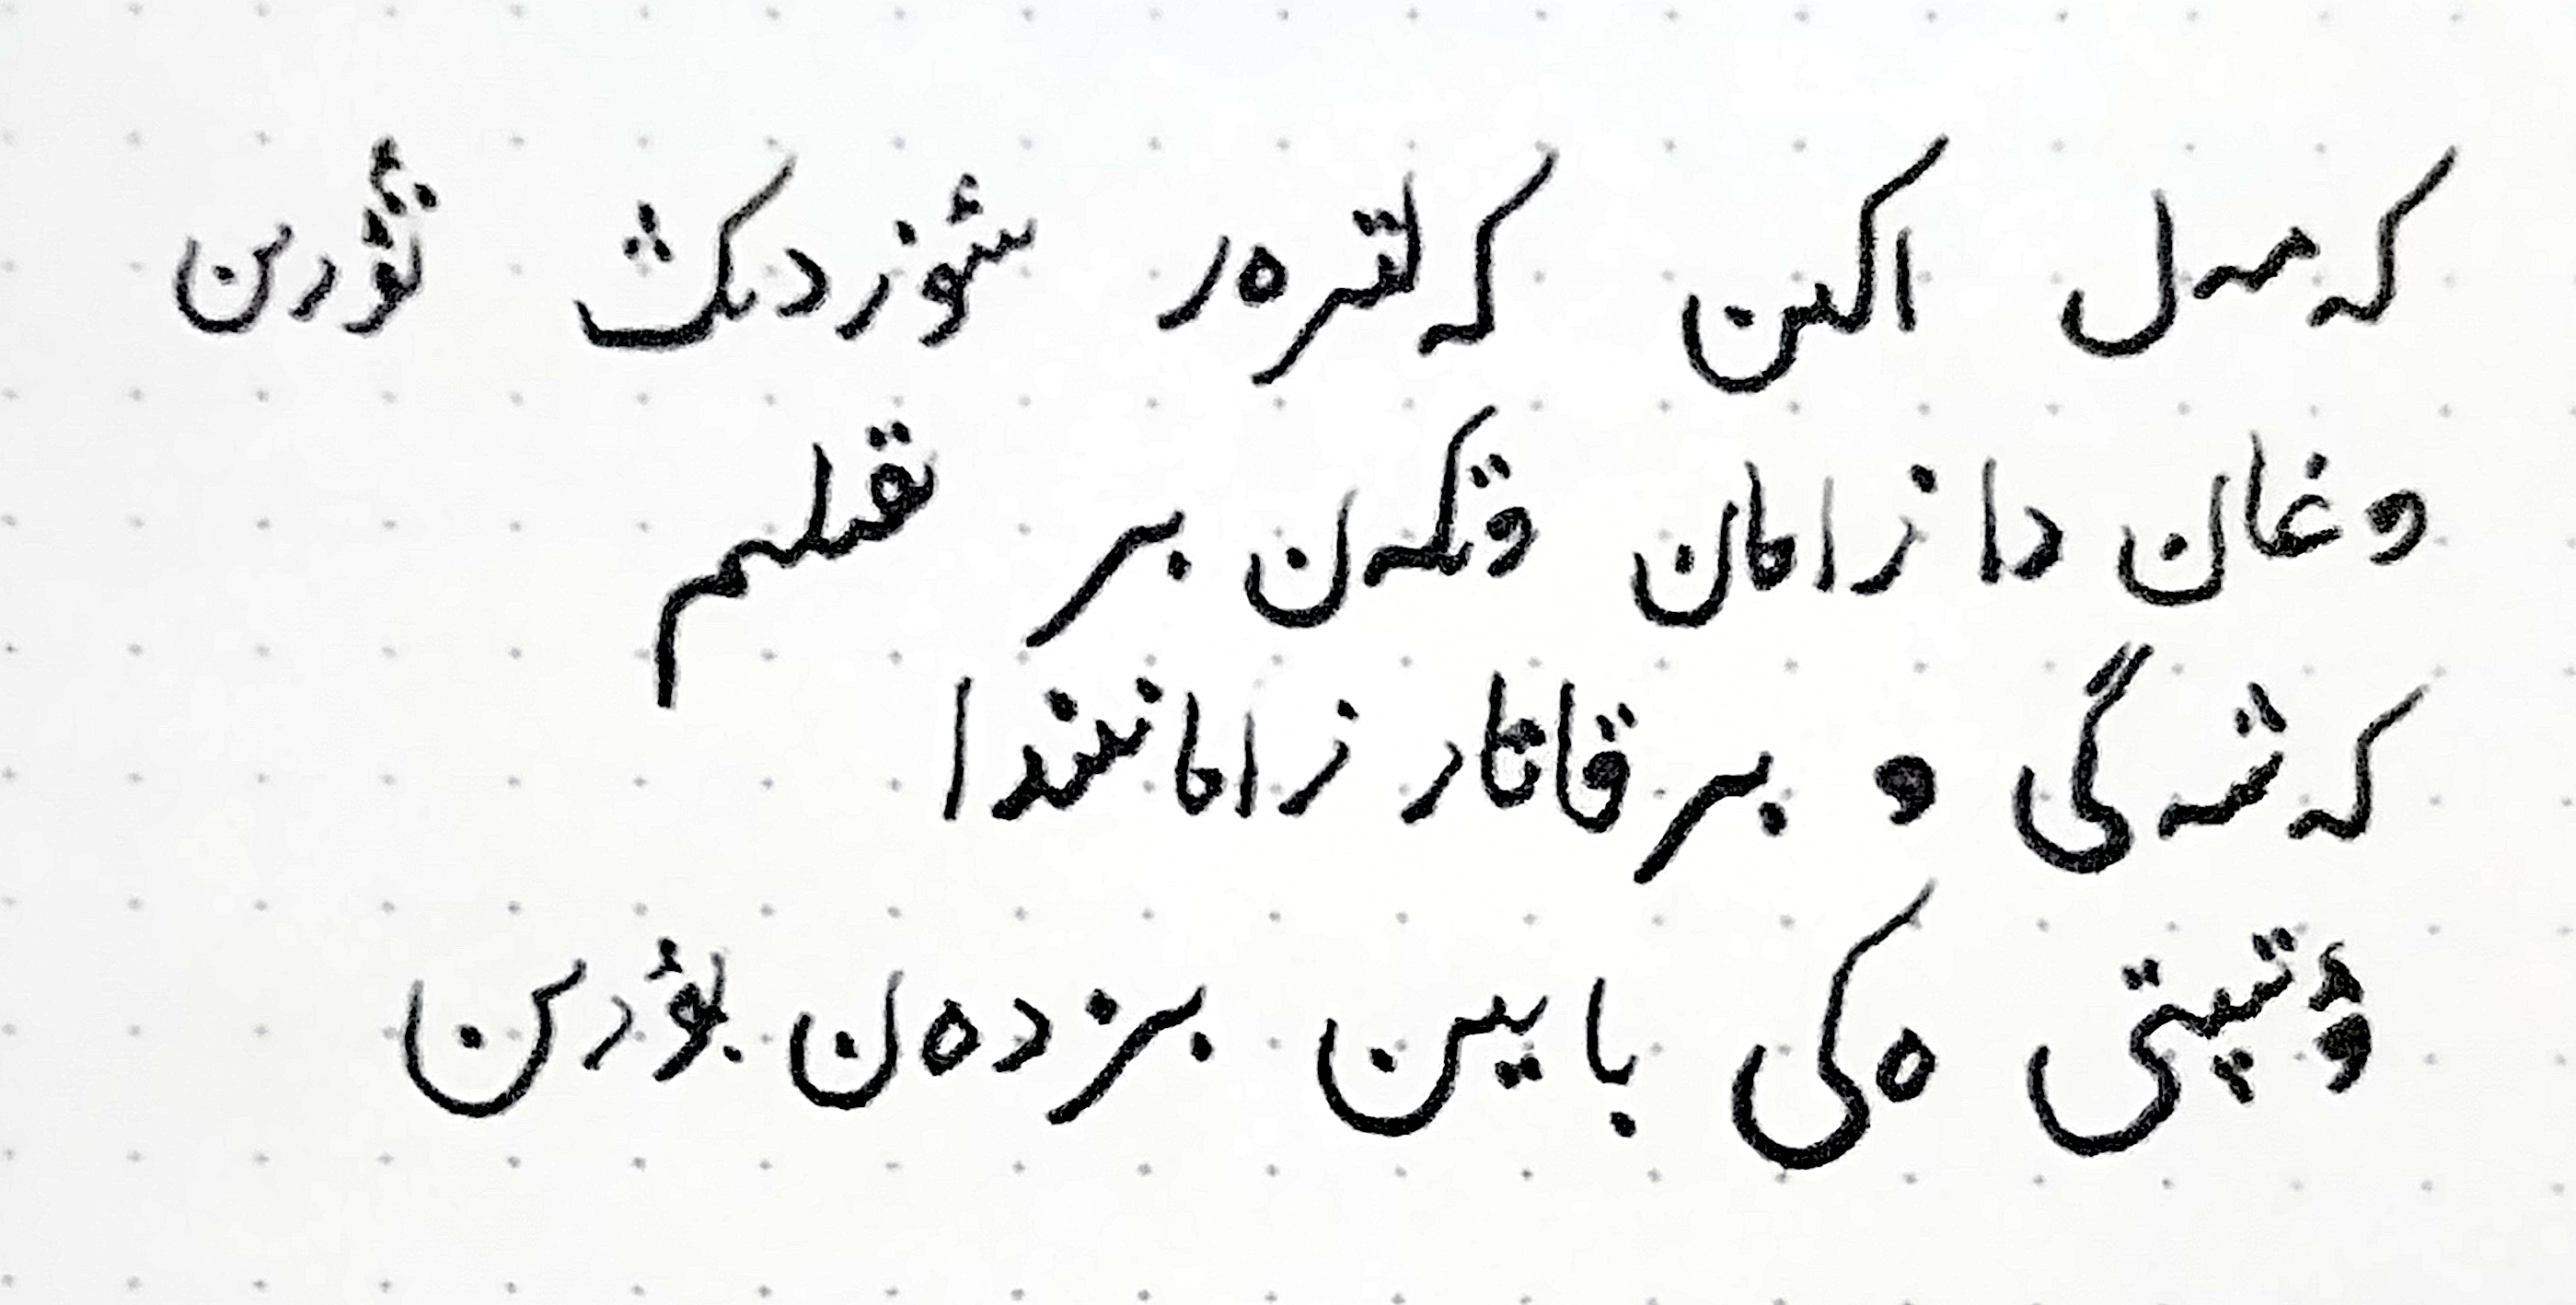 Qazaq in Arabic script